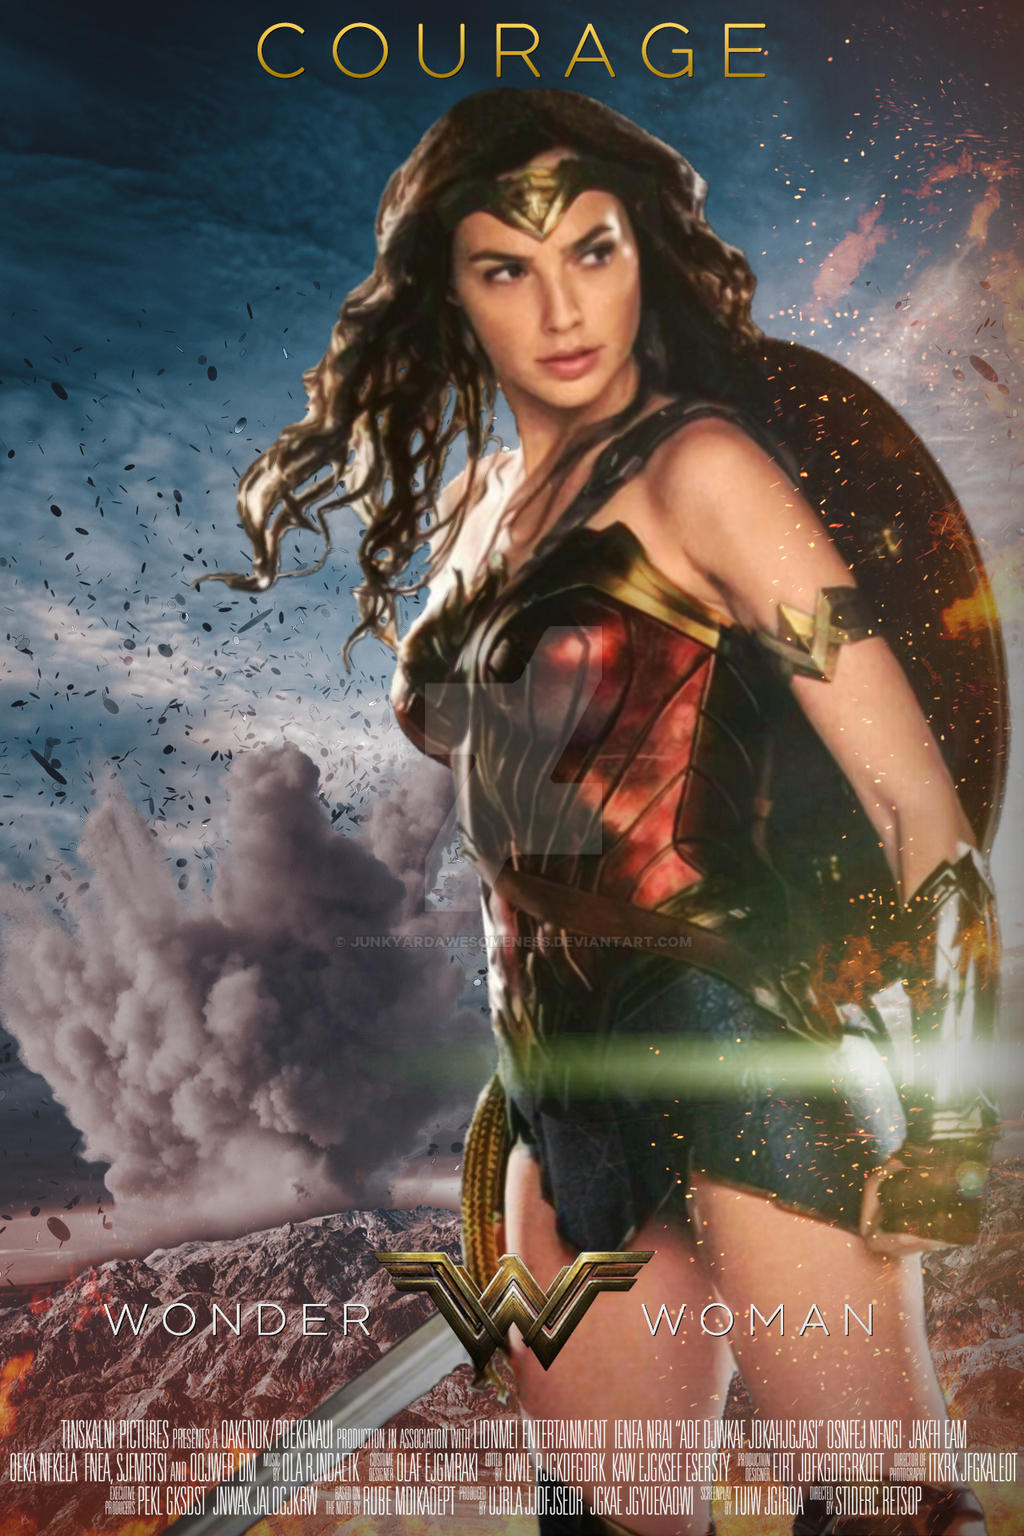 Wonder Woman (2017) movie posters  Superman wonder woman, Wonder